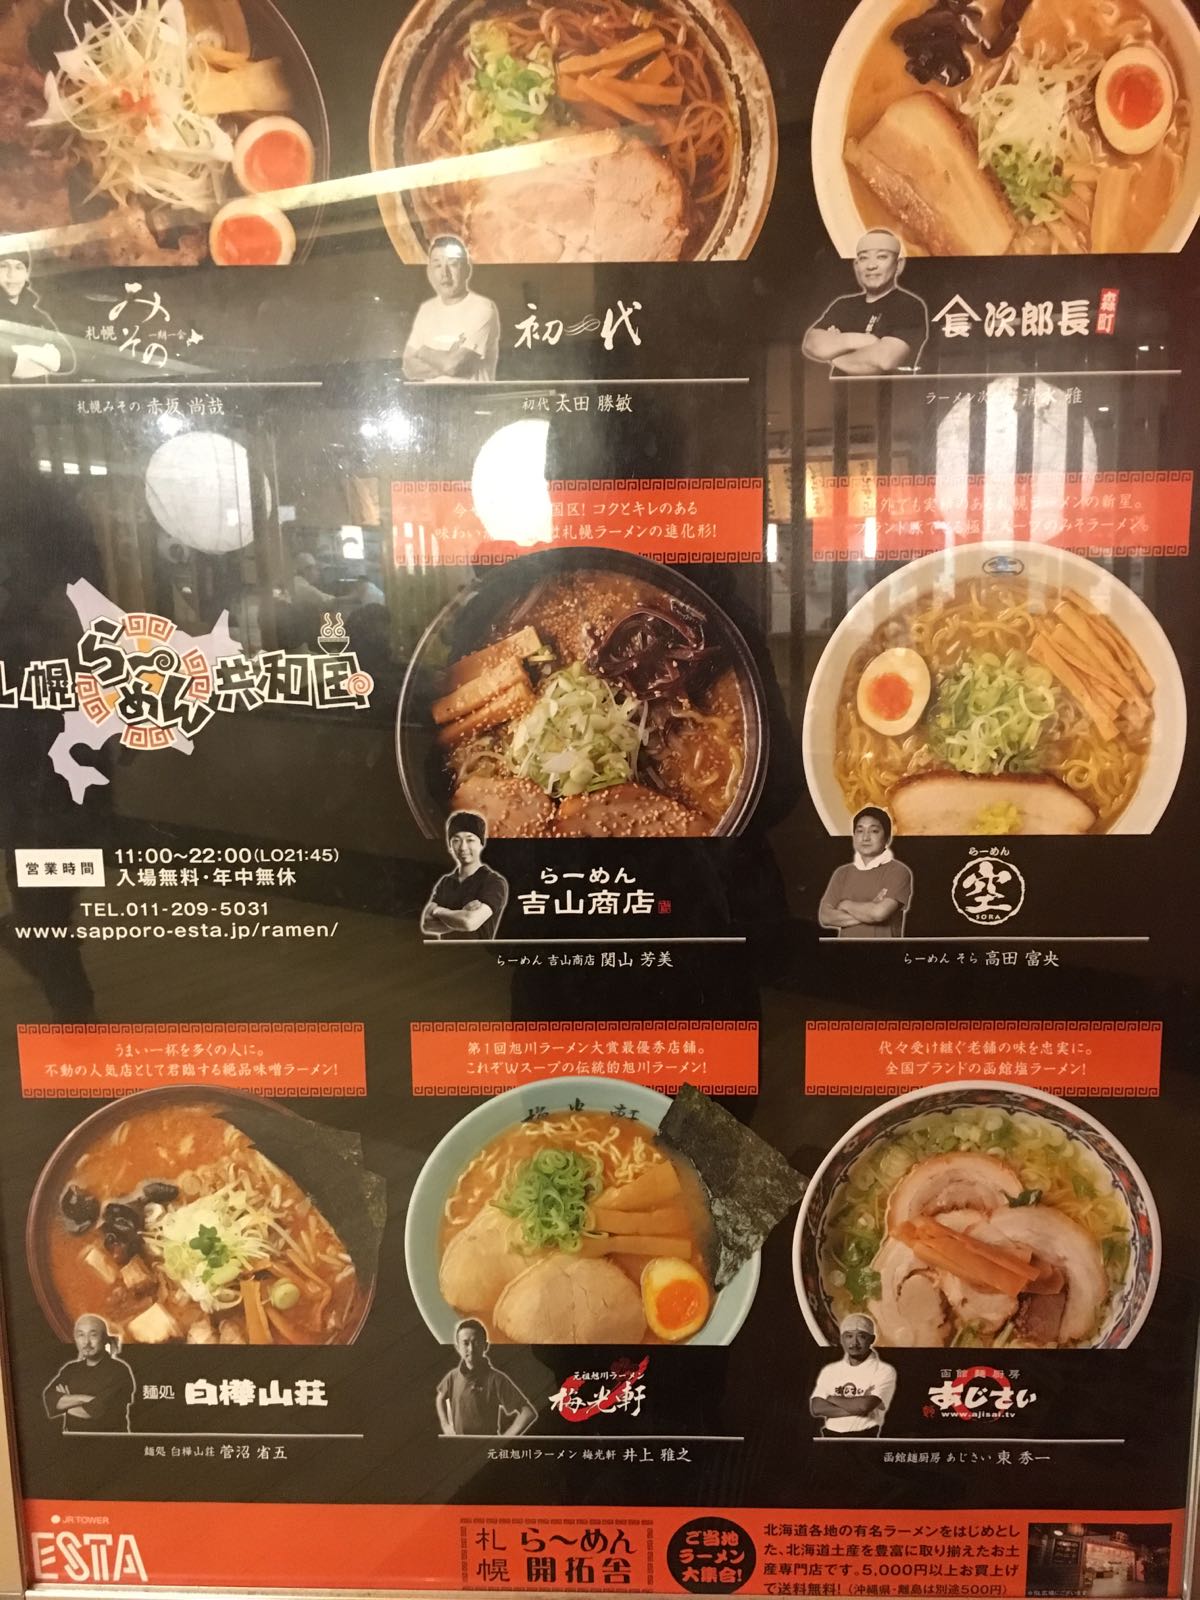 日本第一餐，当然要吃拉面啦！地方很好找，就在JR札幌站外面，出来就可以